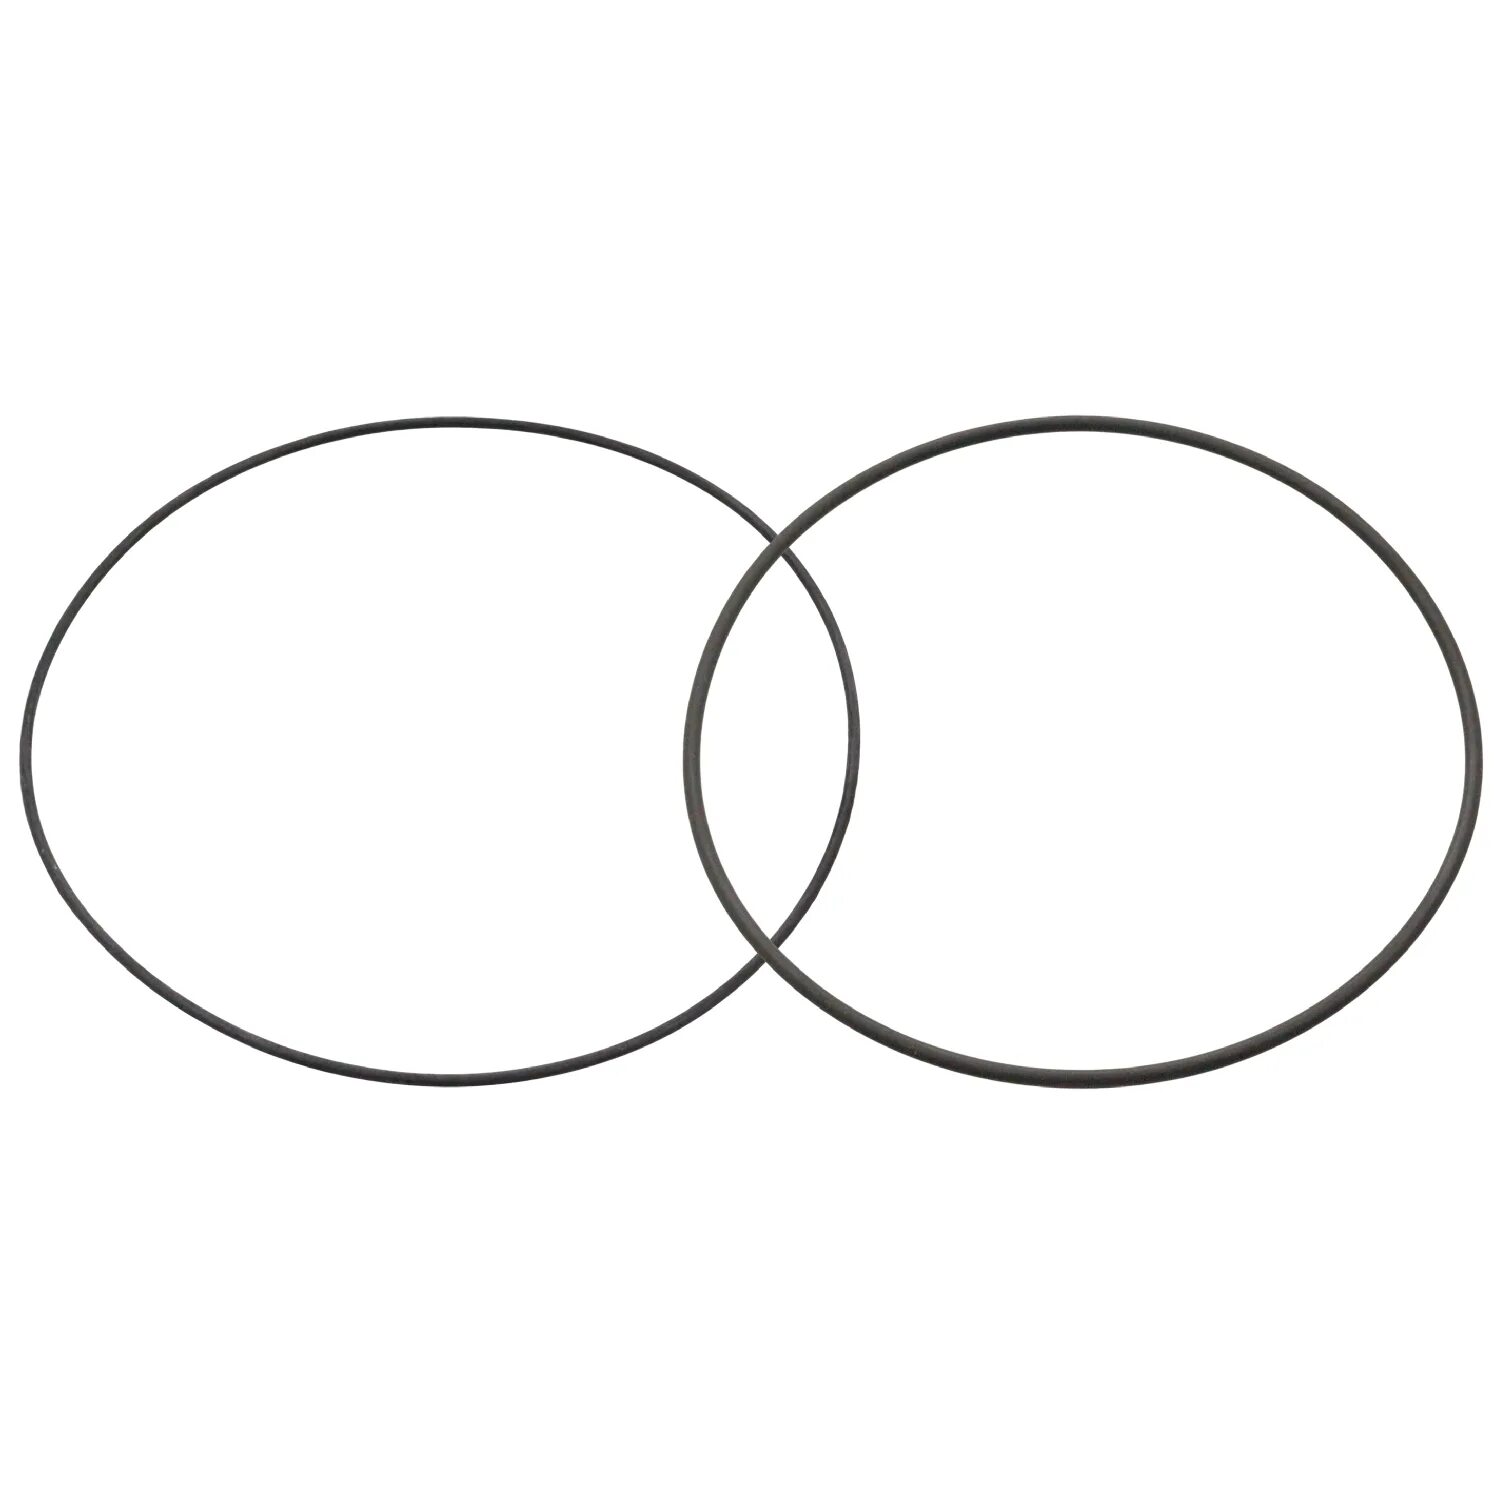 2 4 круга. Пересекающиеся круги. Две пересекающиеся окружности. Два пересекающихся круга. Пересечение двух кругов.